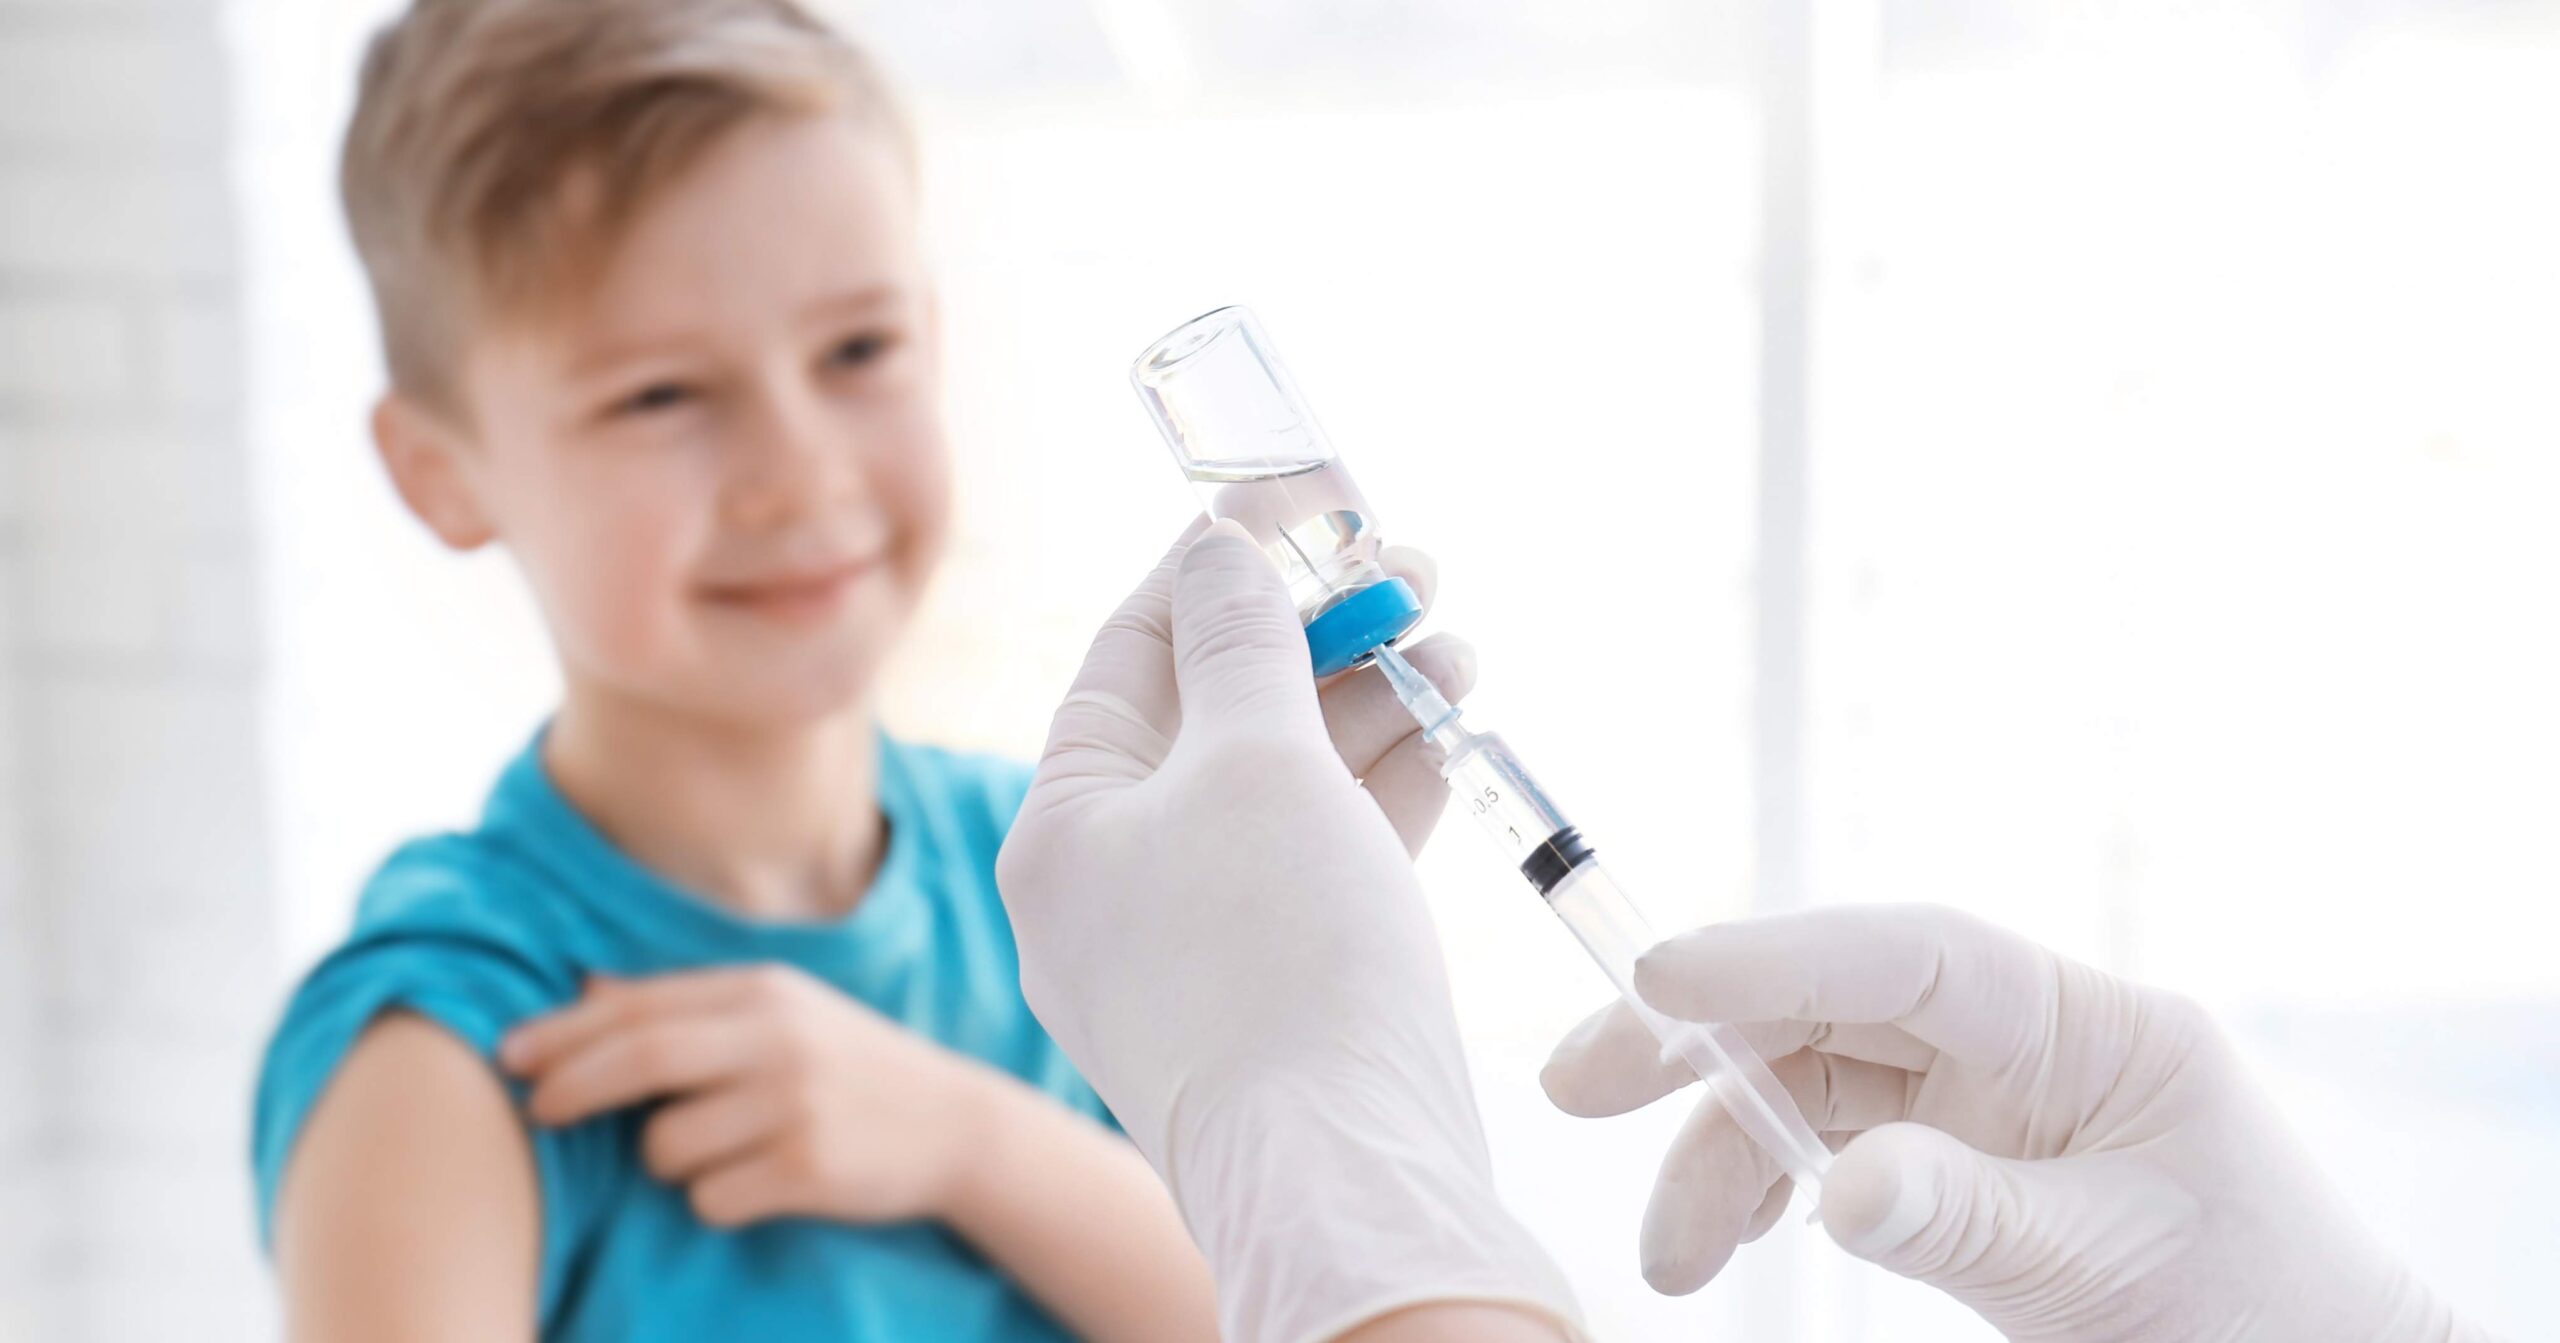 pfizer-vaccino-bambini-5-11-anni